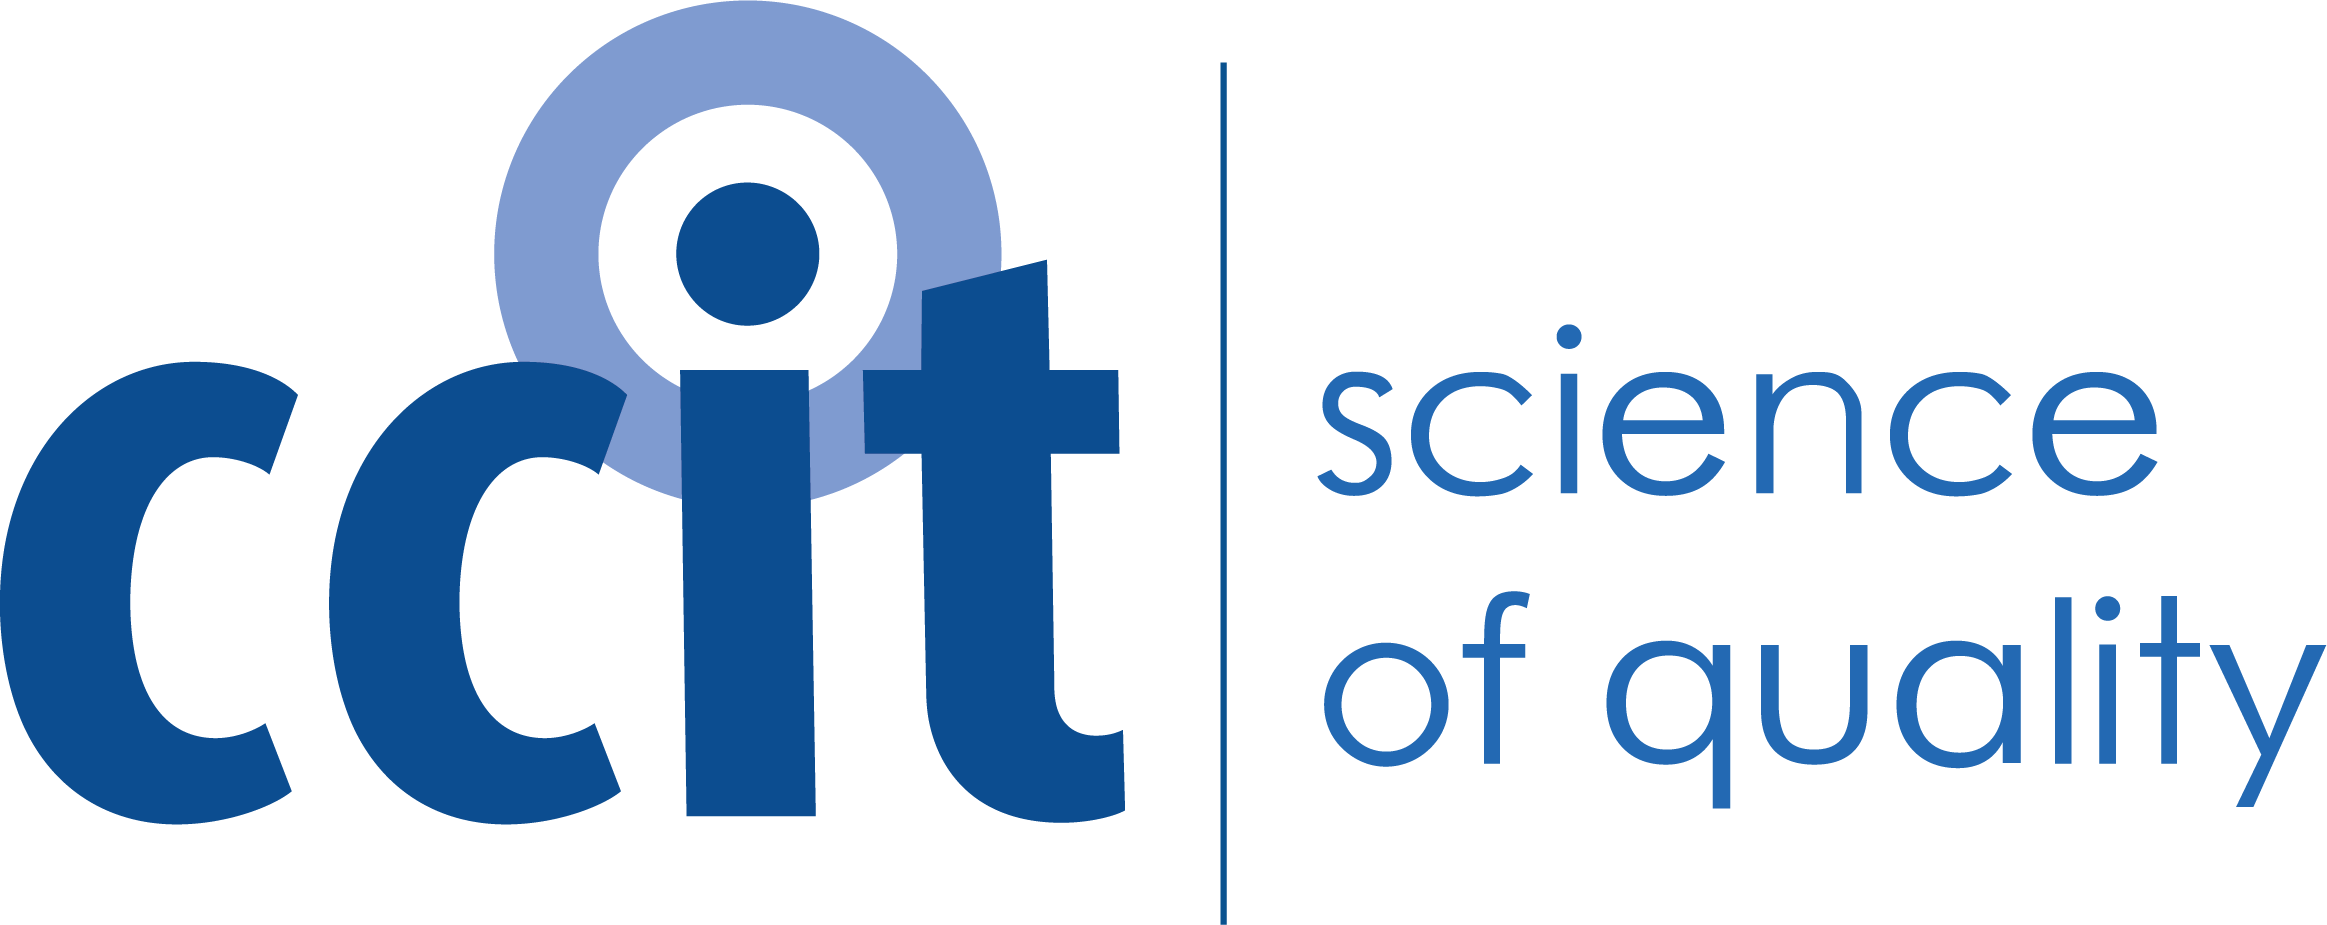 ccit logo